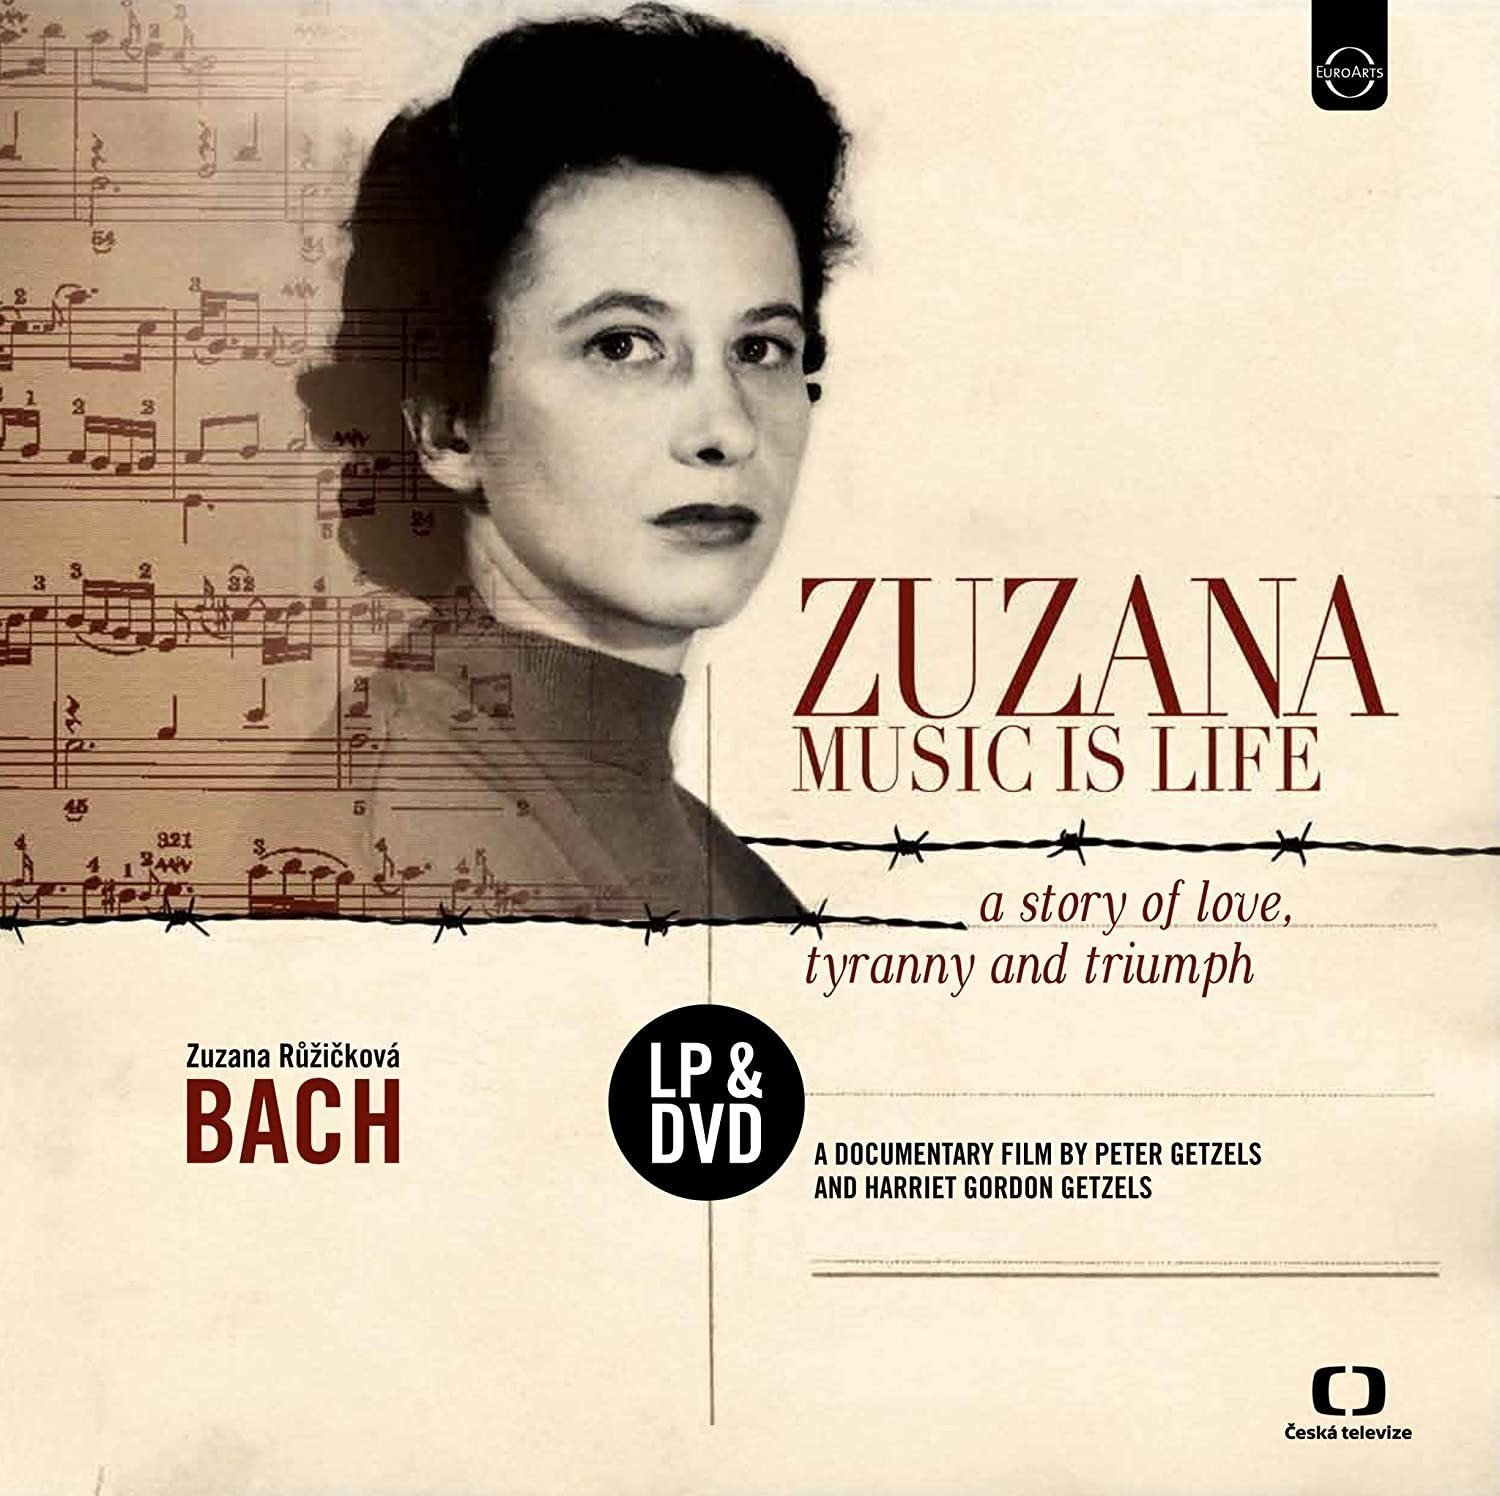 Vinyl Record Zuzana Růžičková - Zuzana: Music Is Life - A Story Of Love, Tyranny And Triumph (LP + DVD)